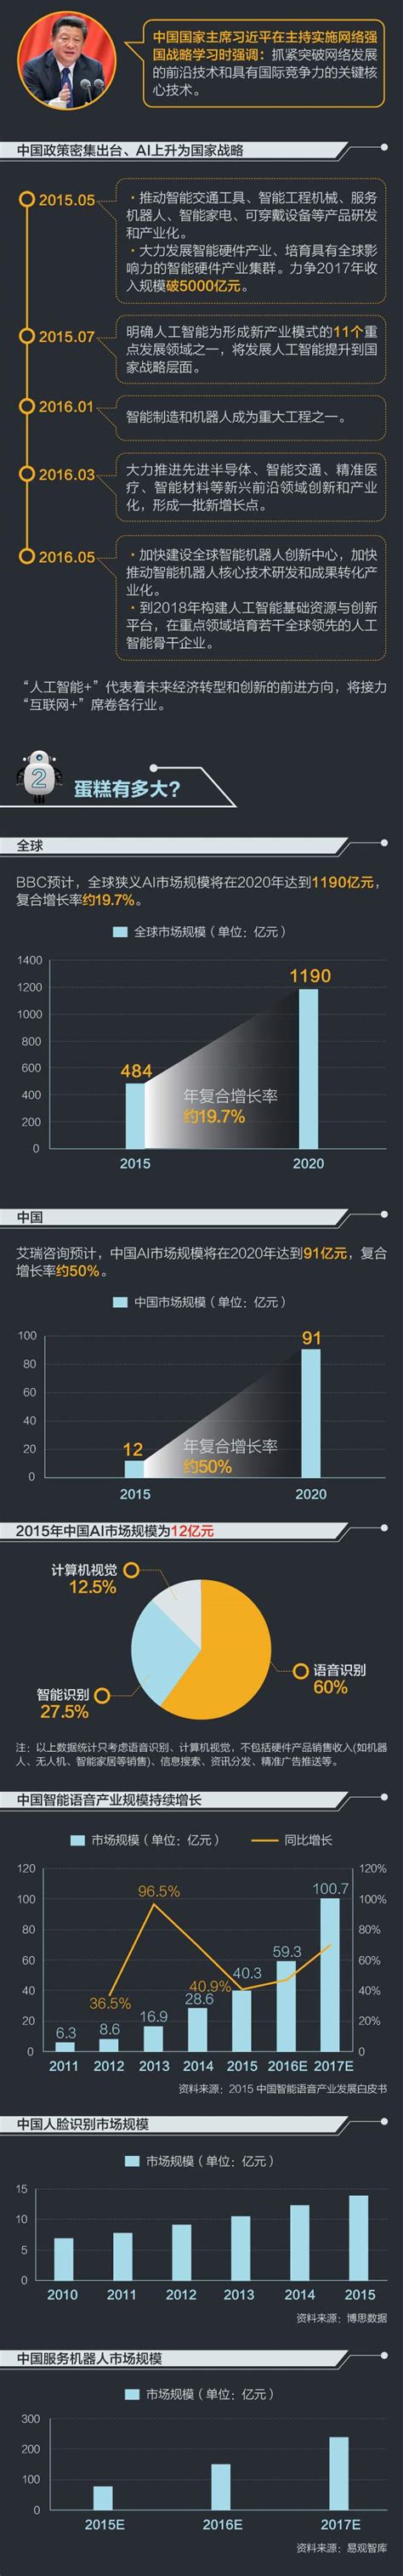 【图解】中国五年新增AI类公司1518家 数据分析类占四成|界面新闻